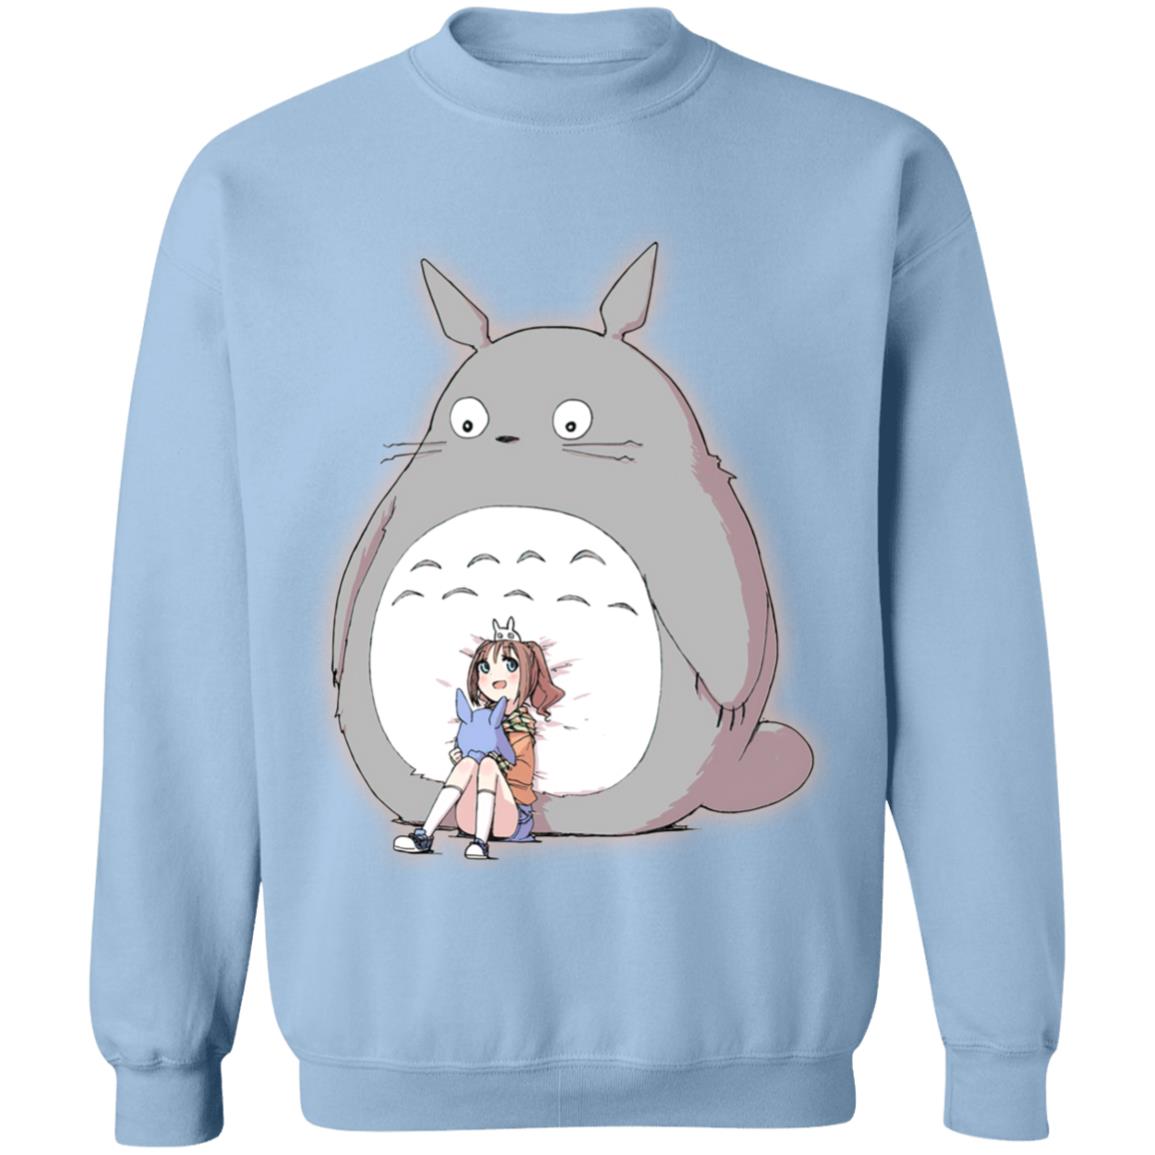 Totoro and the little girl Sweatshirt